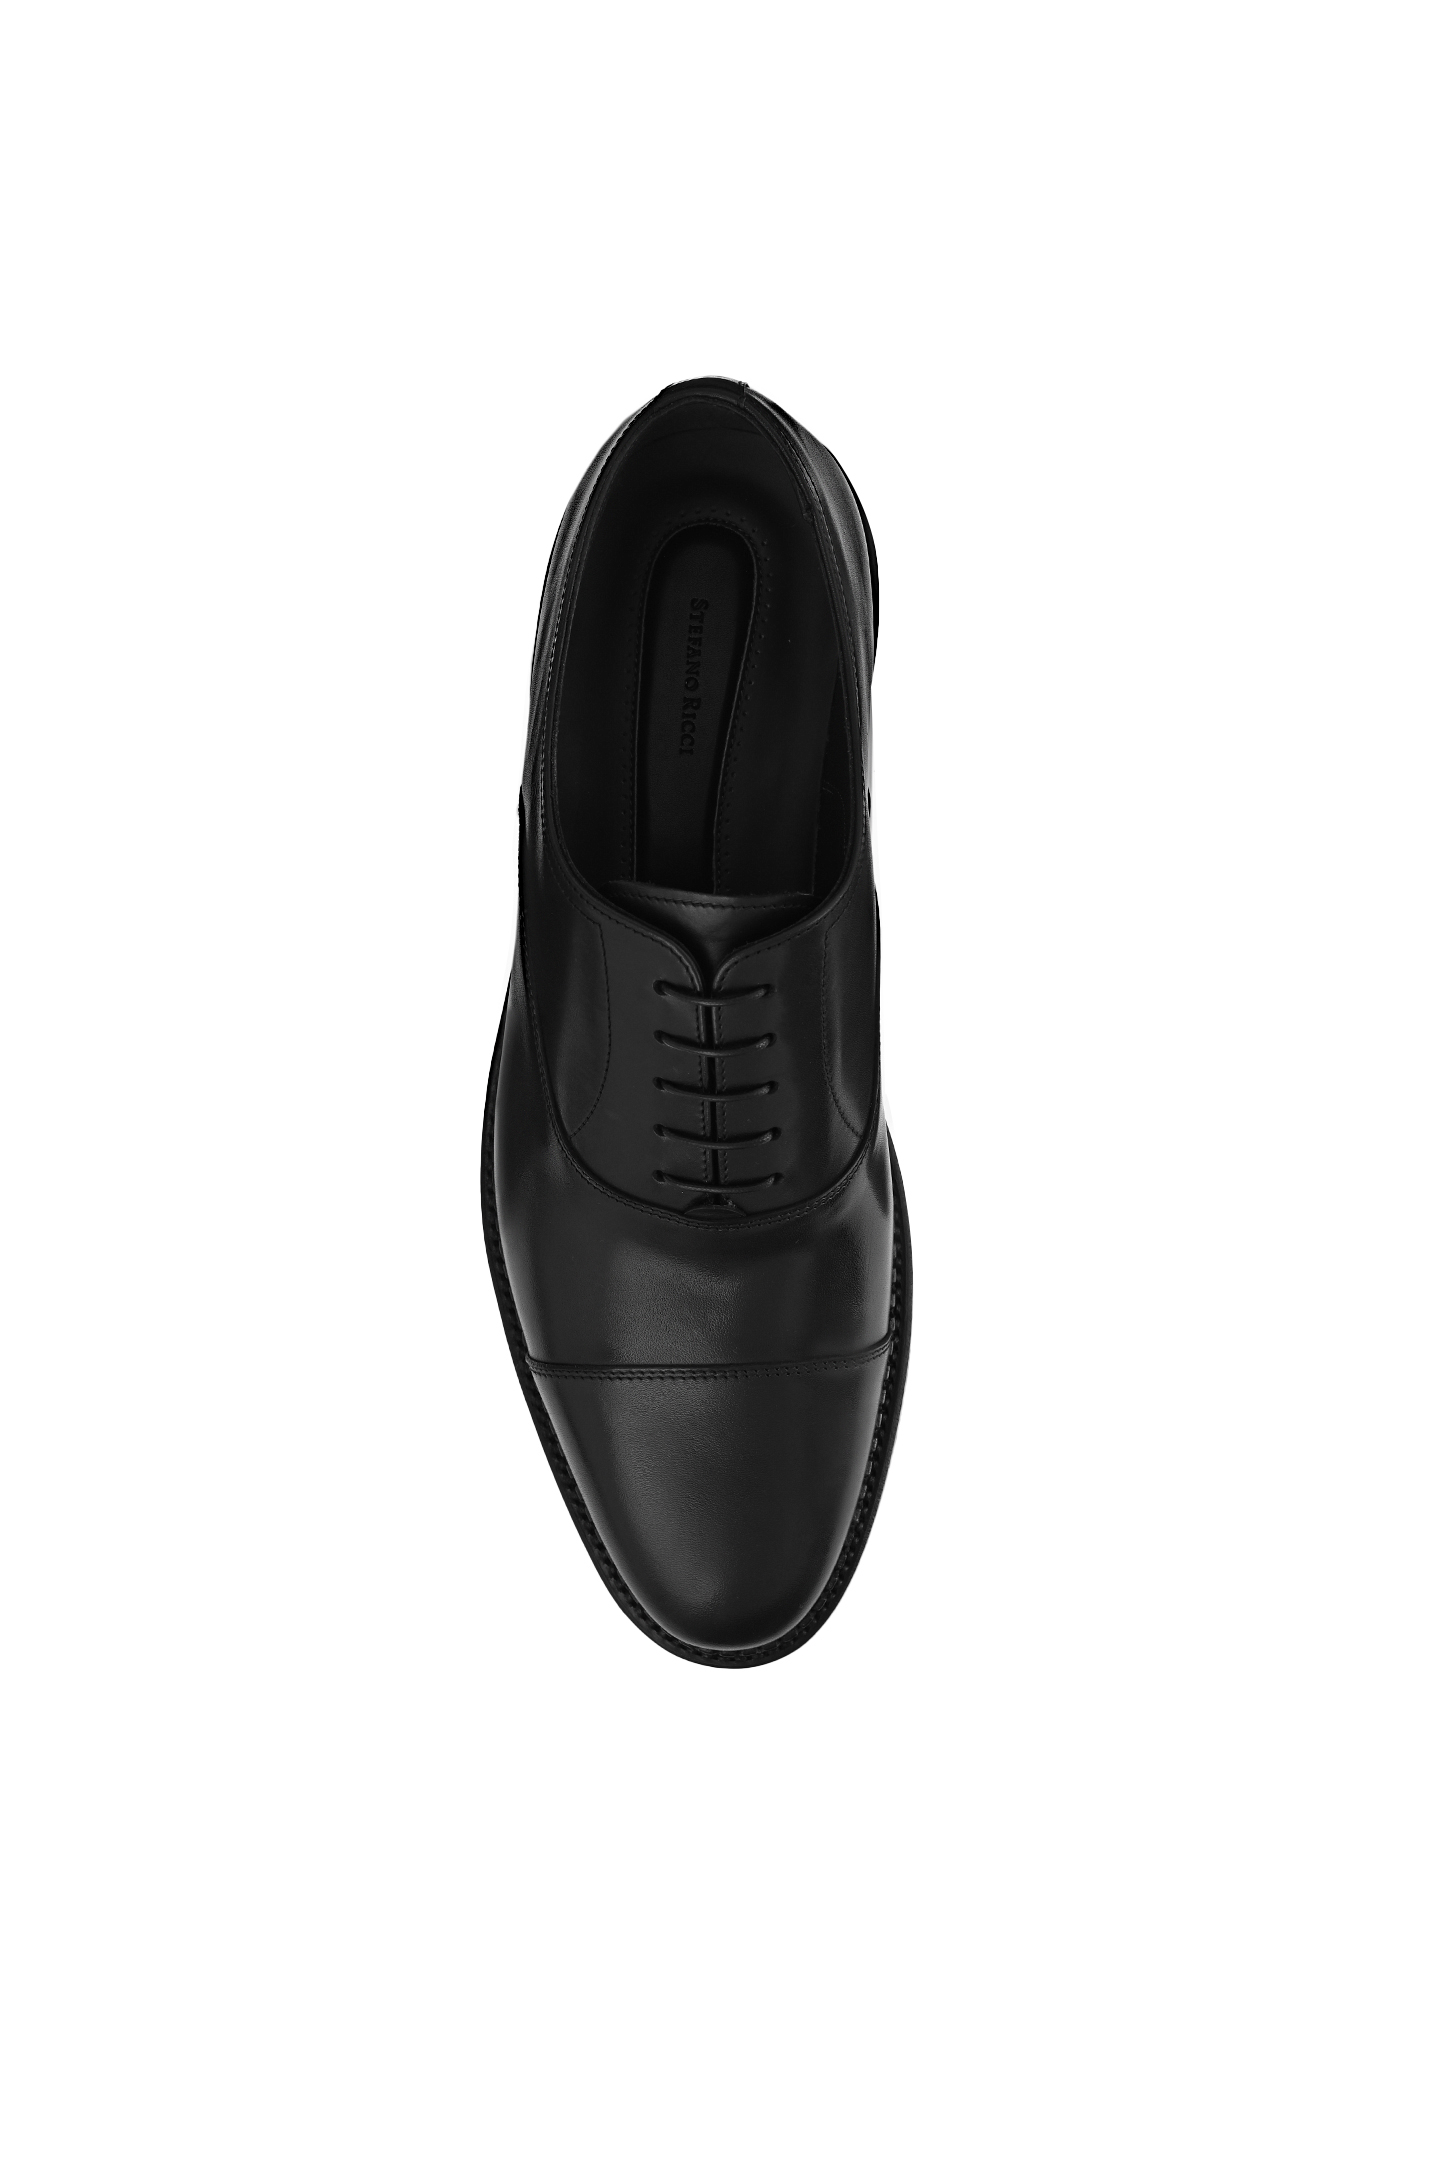 Туфли STEFANO RICCI UE21C6387 VT, цвет: Черный, Мужской